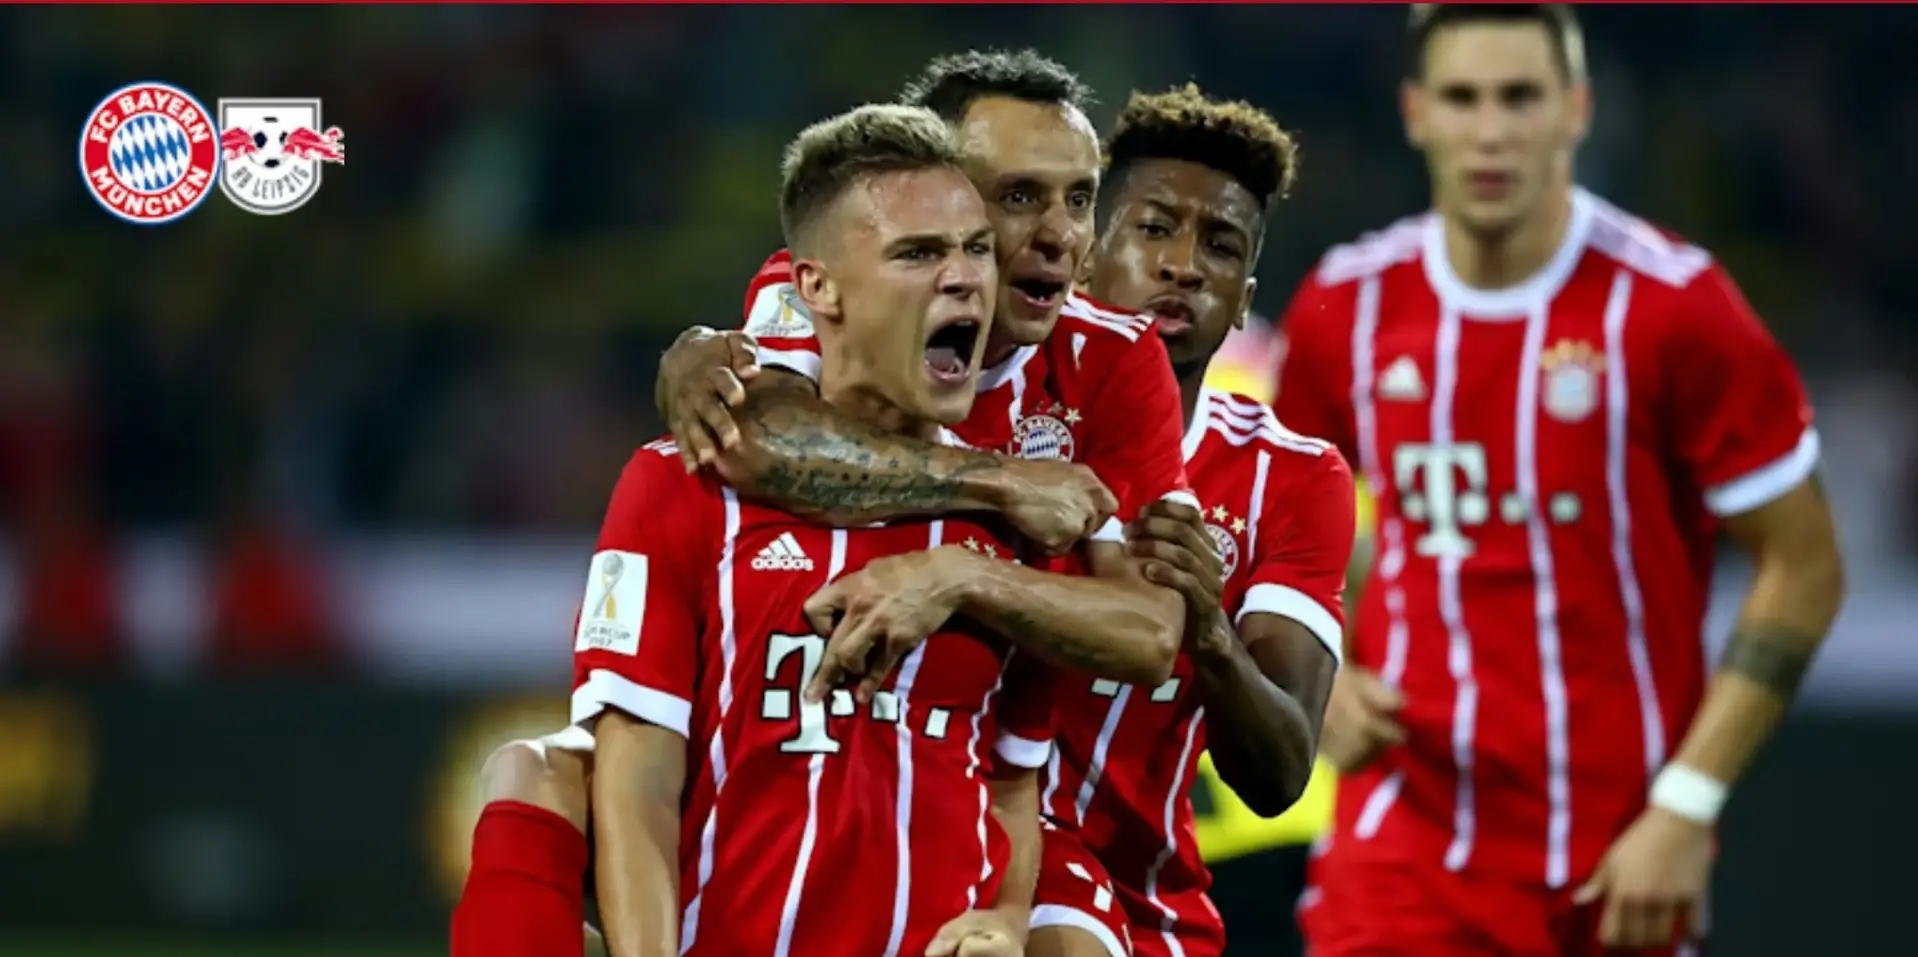 Kantersieg, Elfmeterdrama & mehr: 4 unvergessliche Supercup-Erfolge der Bayern